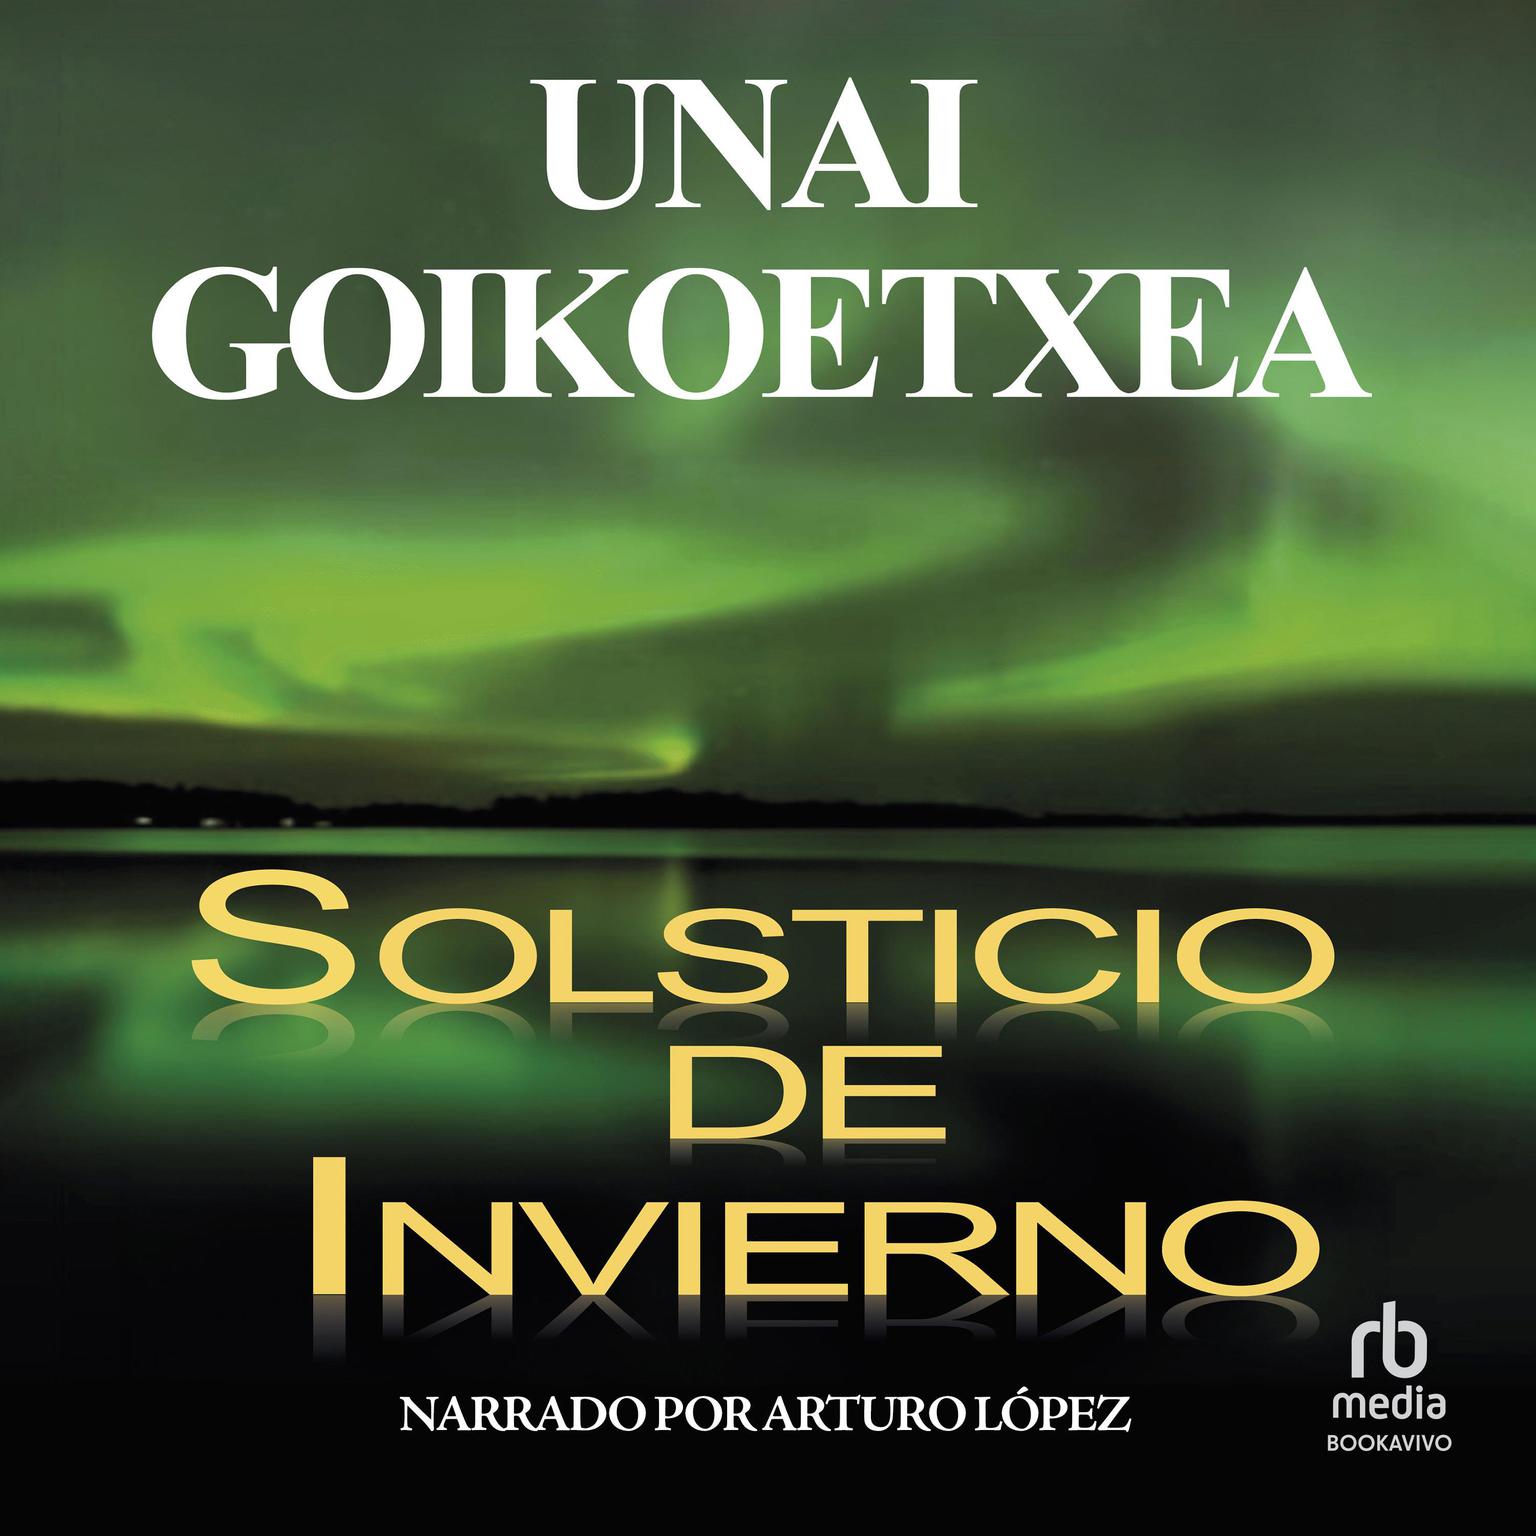 Solsticio de invierno Audiobook, by Unai Goikoetxea